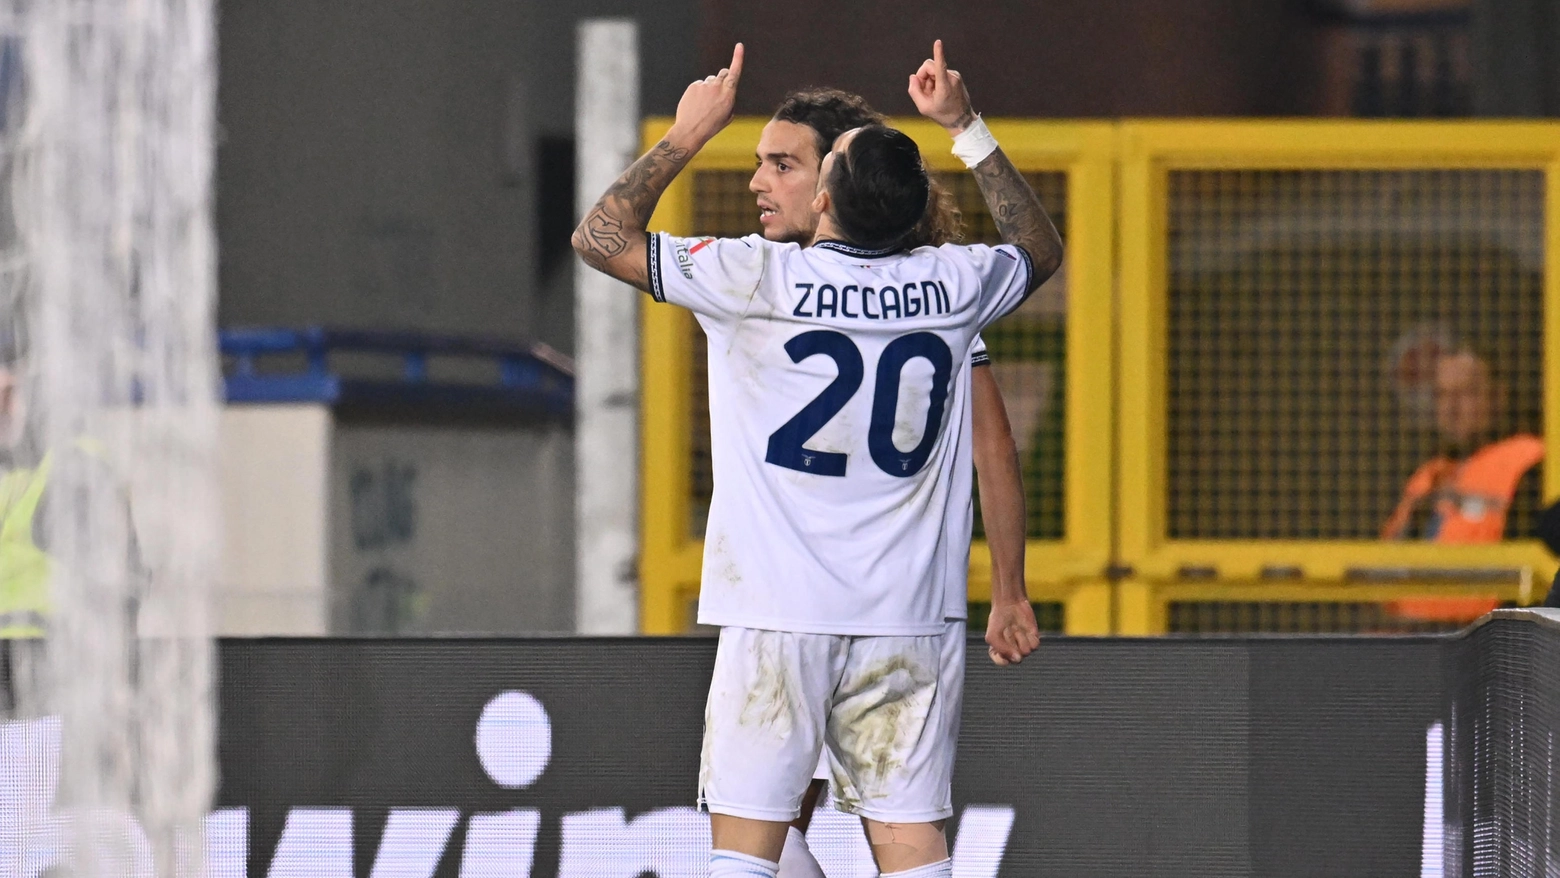 L’attaccante della Lazio ha alzato le braccia al cielo dopo avere segnato a Empoli. “E’ una giornata difficile, spero che tu sia orgoglioso di me”